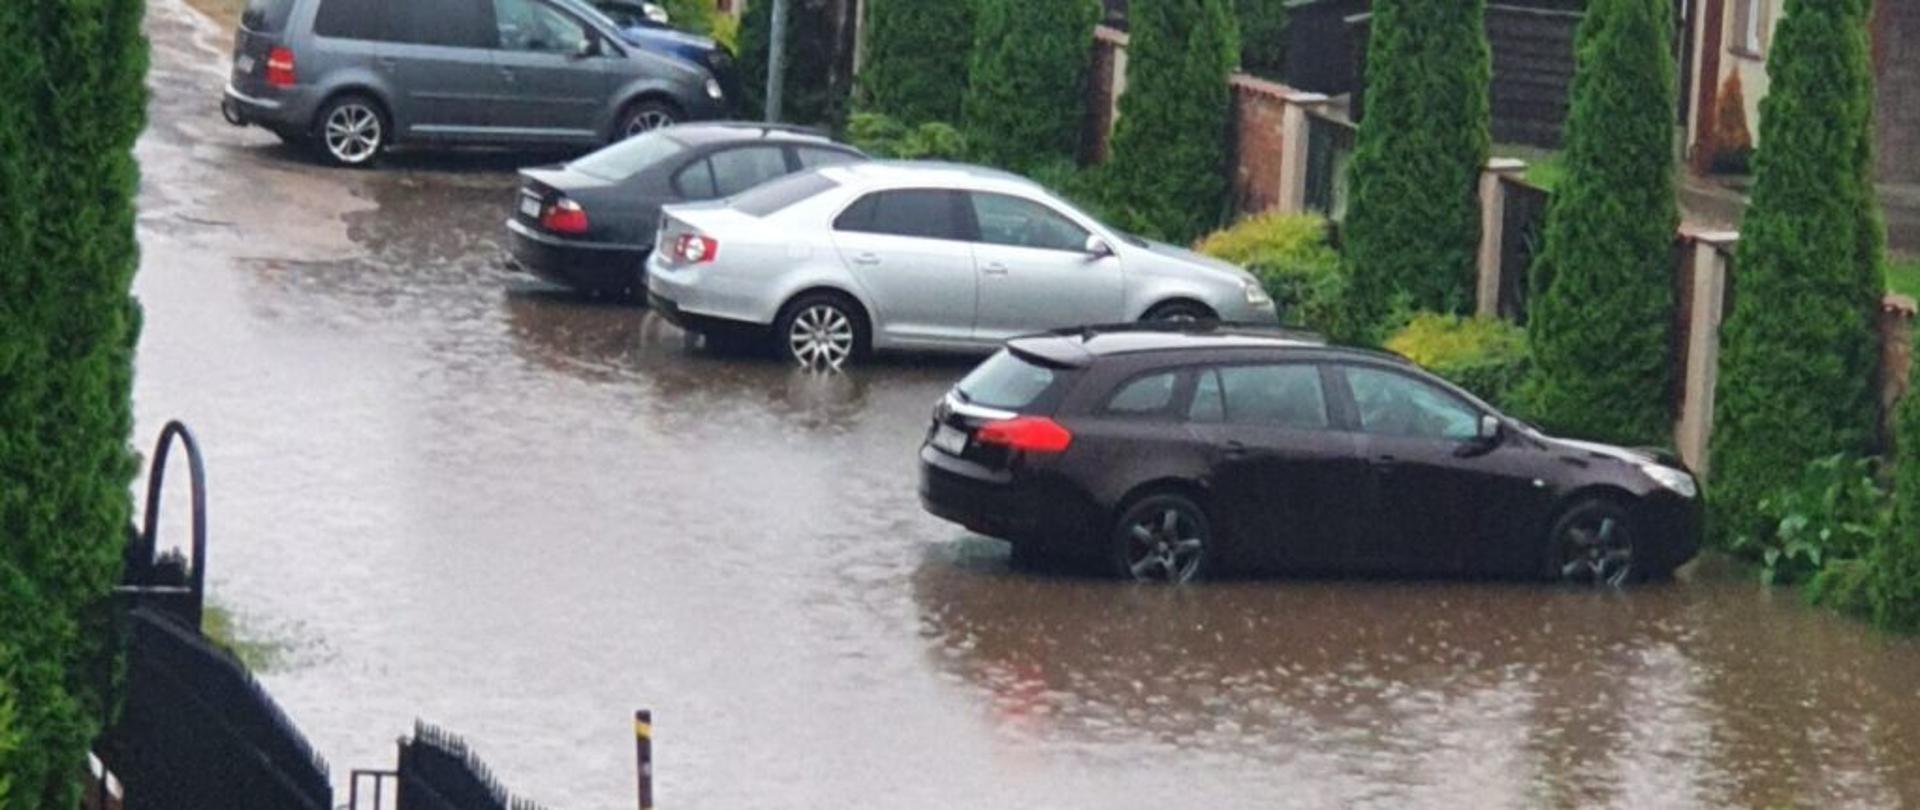 Widok zalanej drogi podczas ulewy w powiecie Ostródzkim